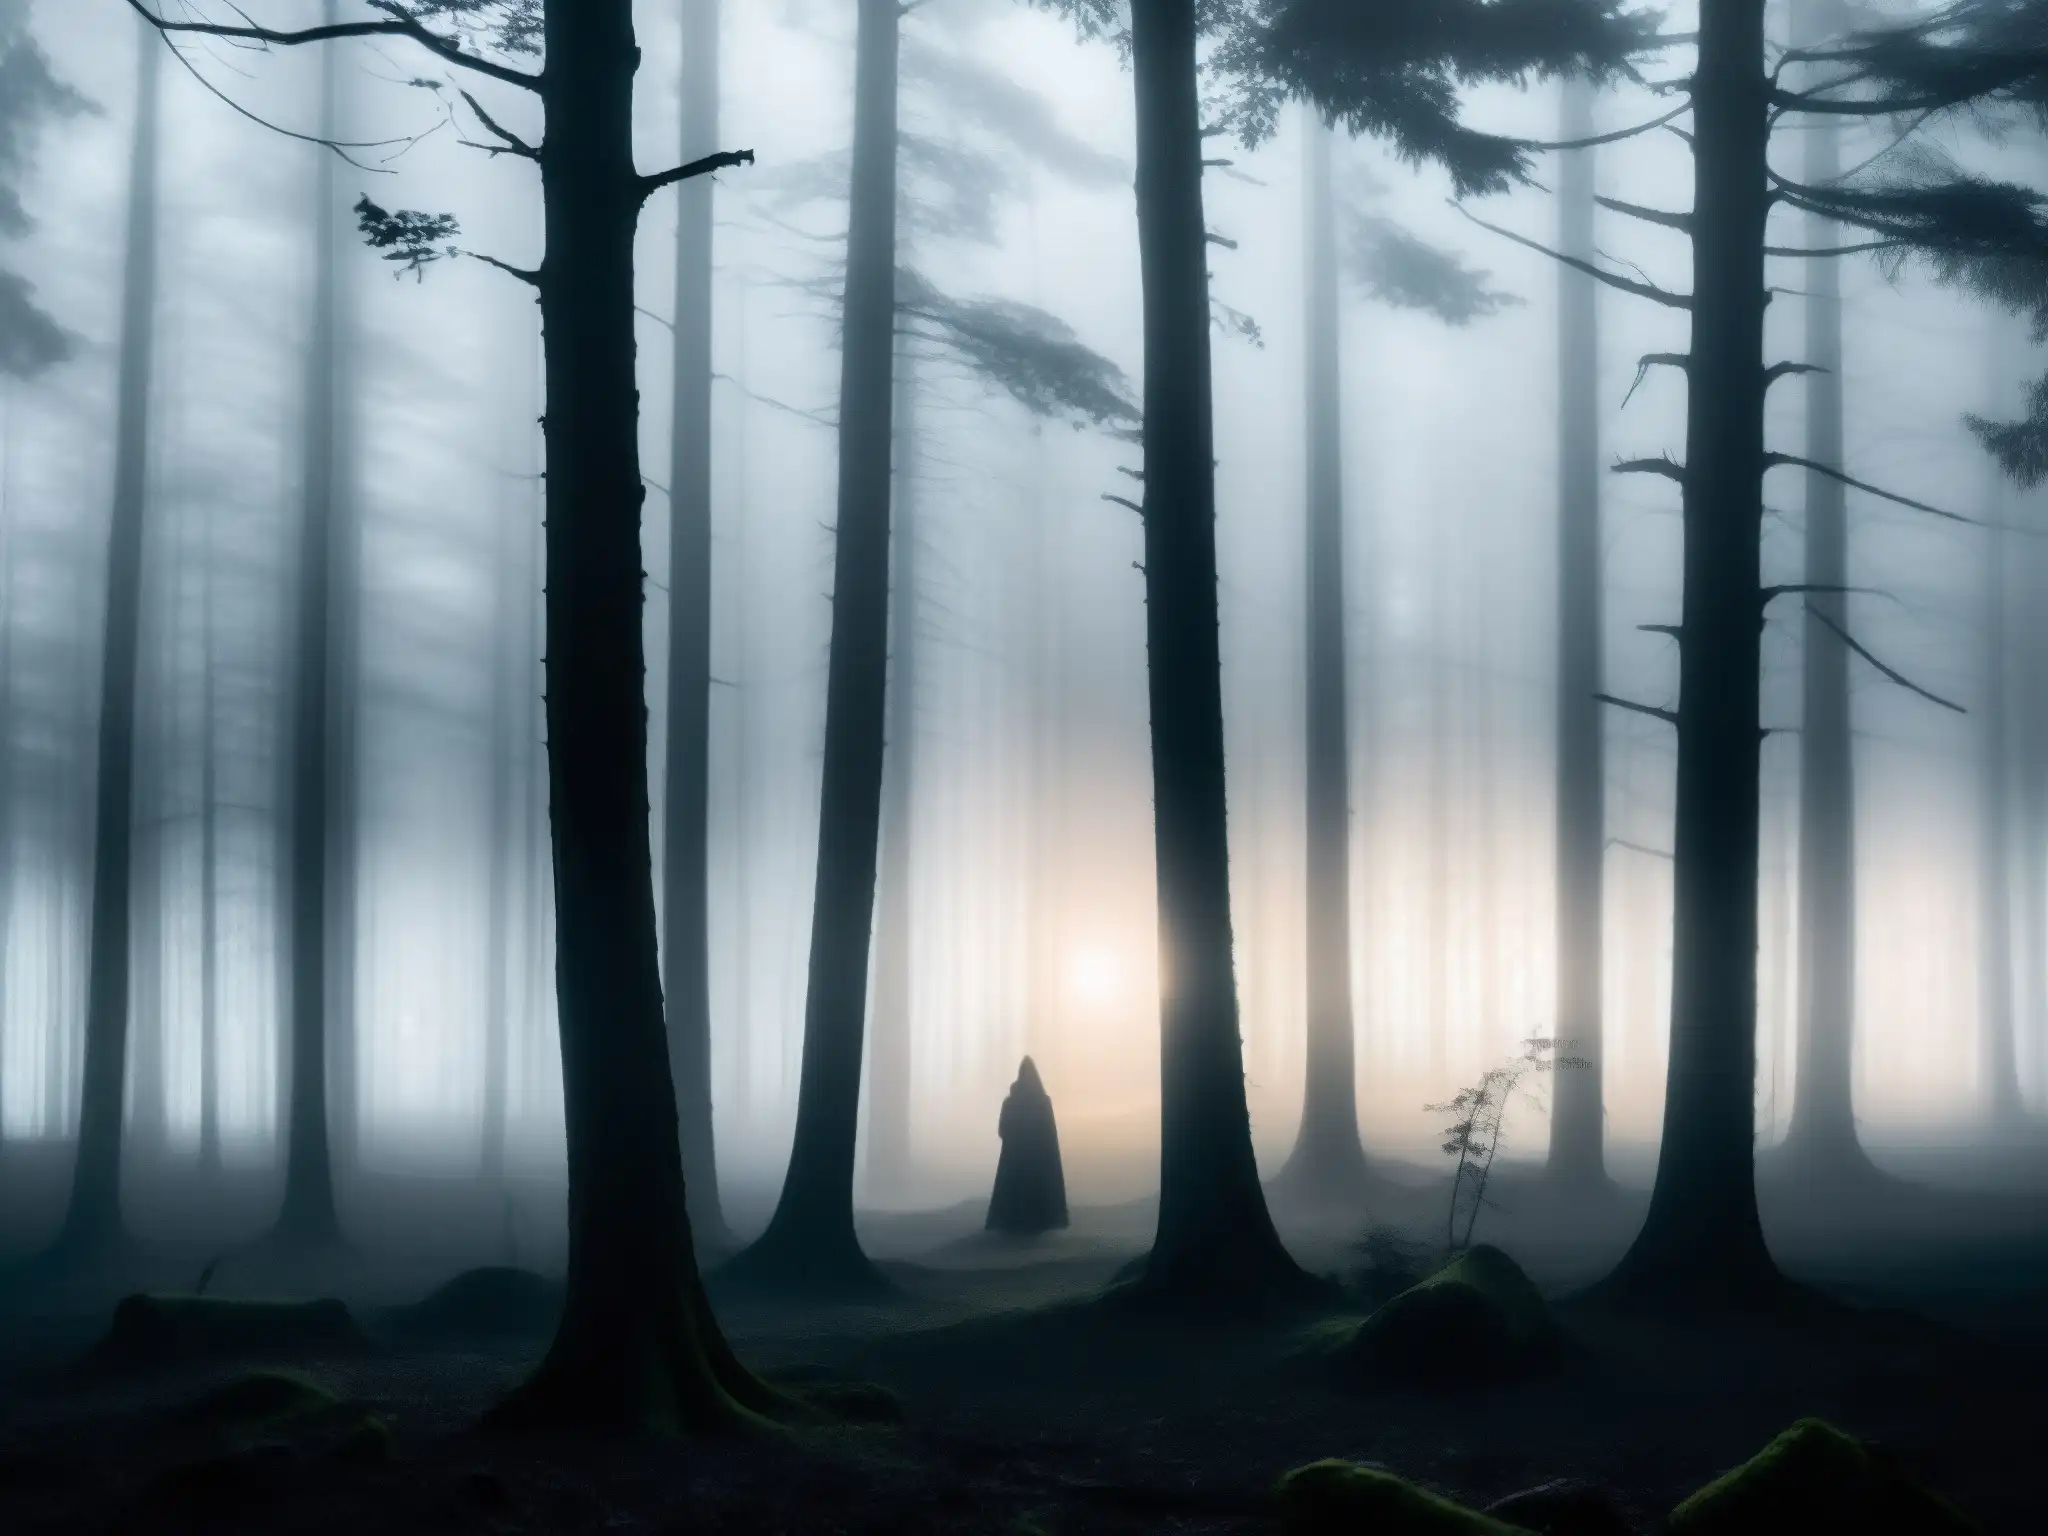 Misterioso bosque nocturno con figura solitaria, evocando la presencia etérea de la leyenda urbana Mujer Llorona